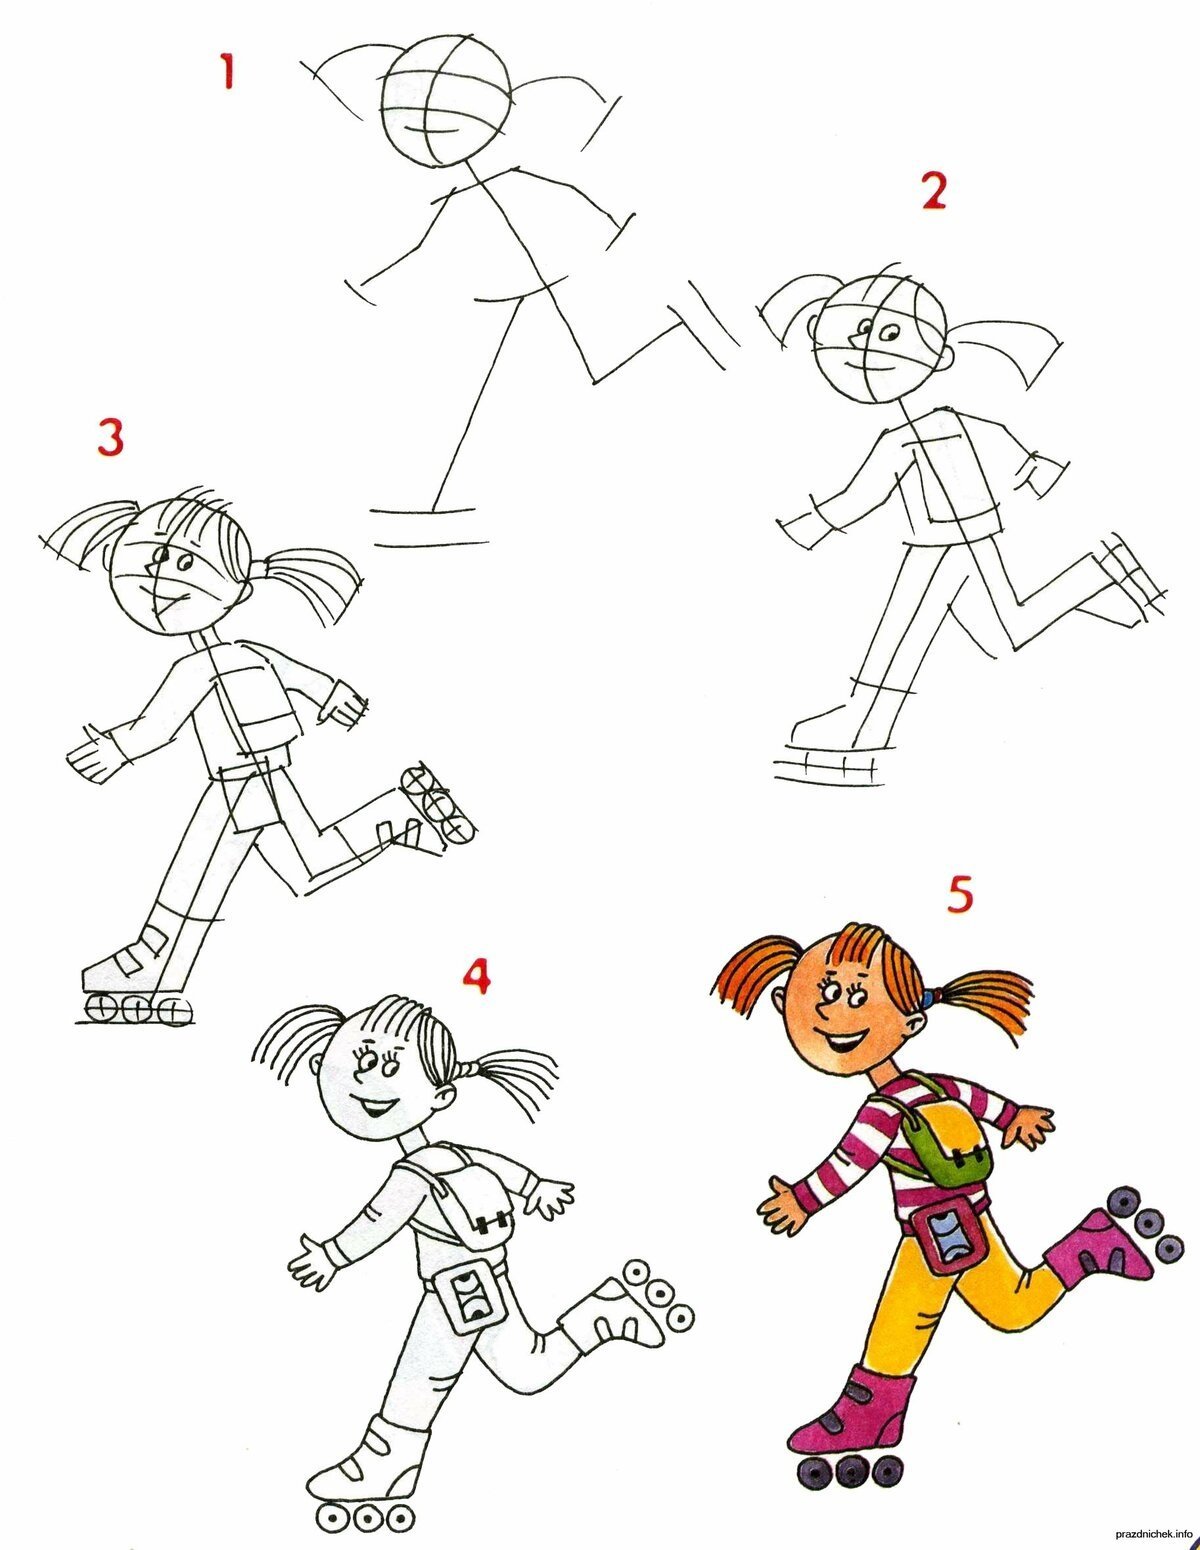 Схема рисования человека в движении для дошкольников